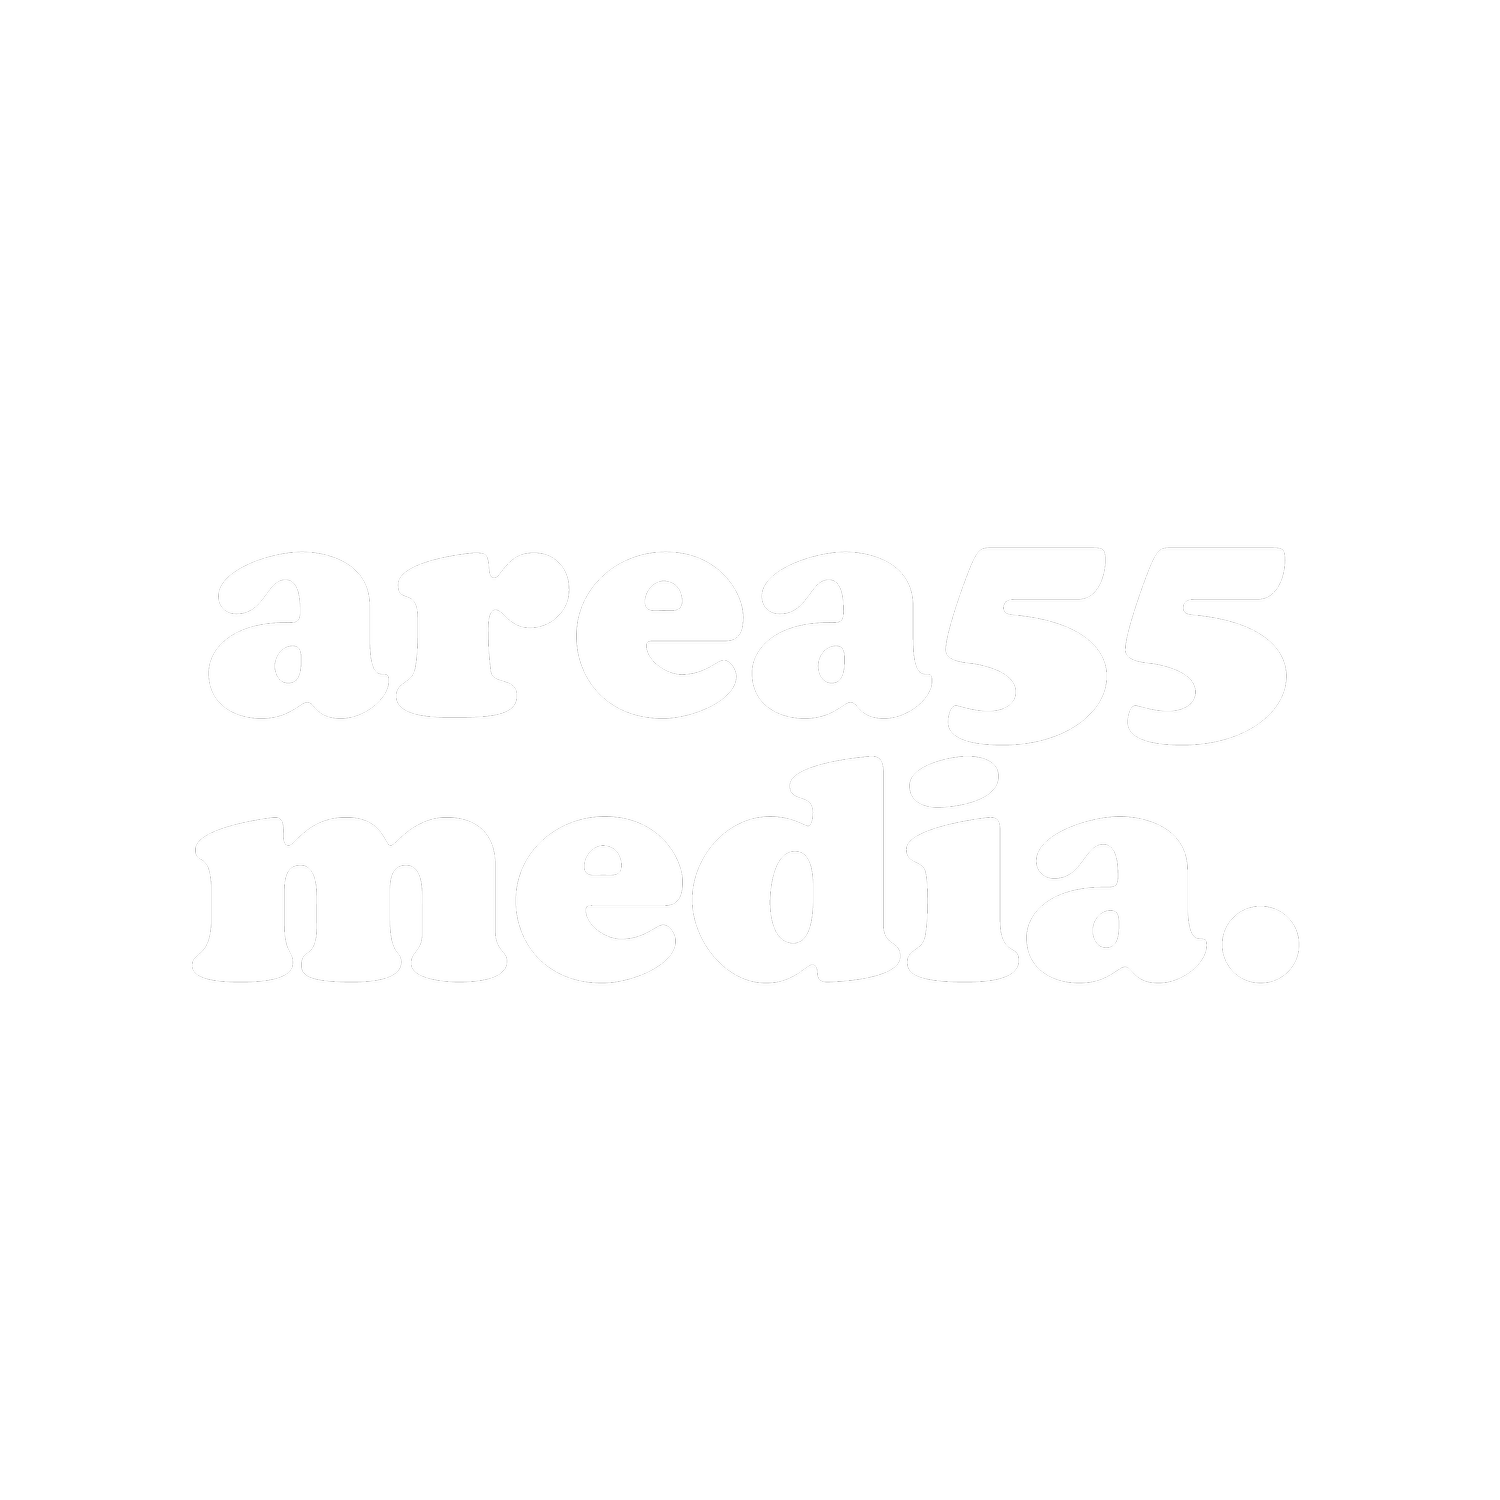 AREA 55 MEDIA